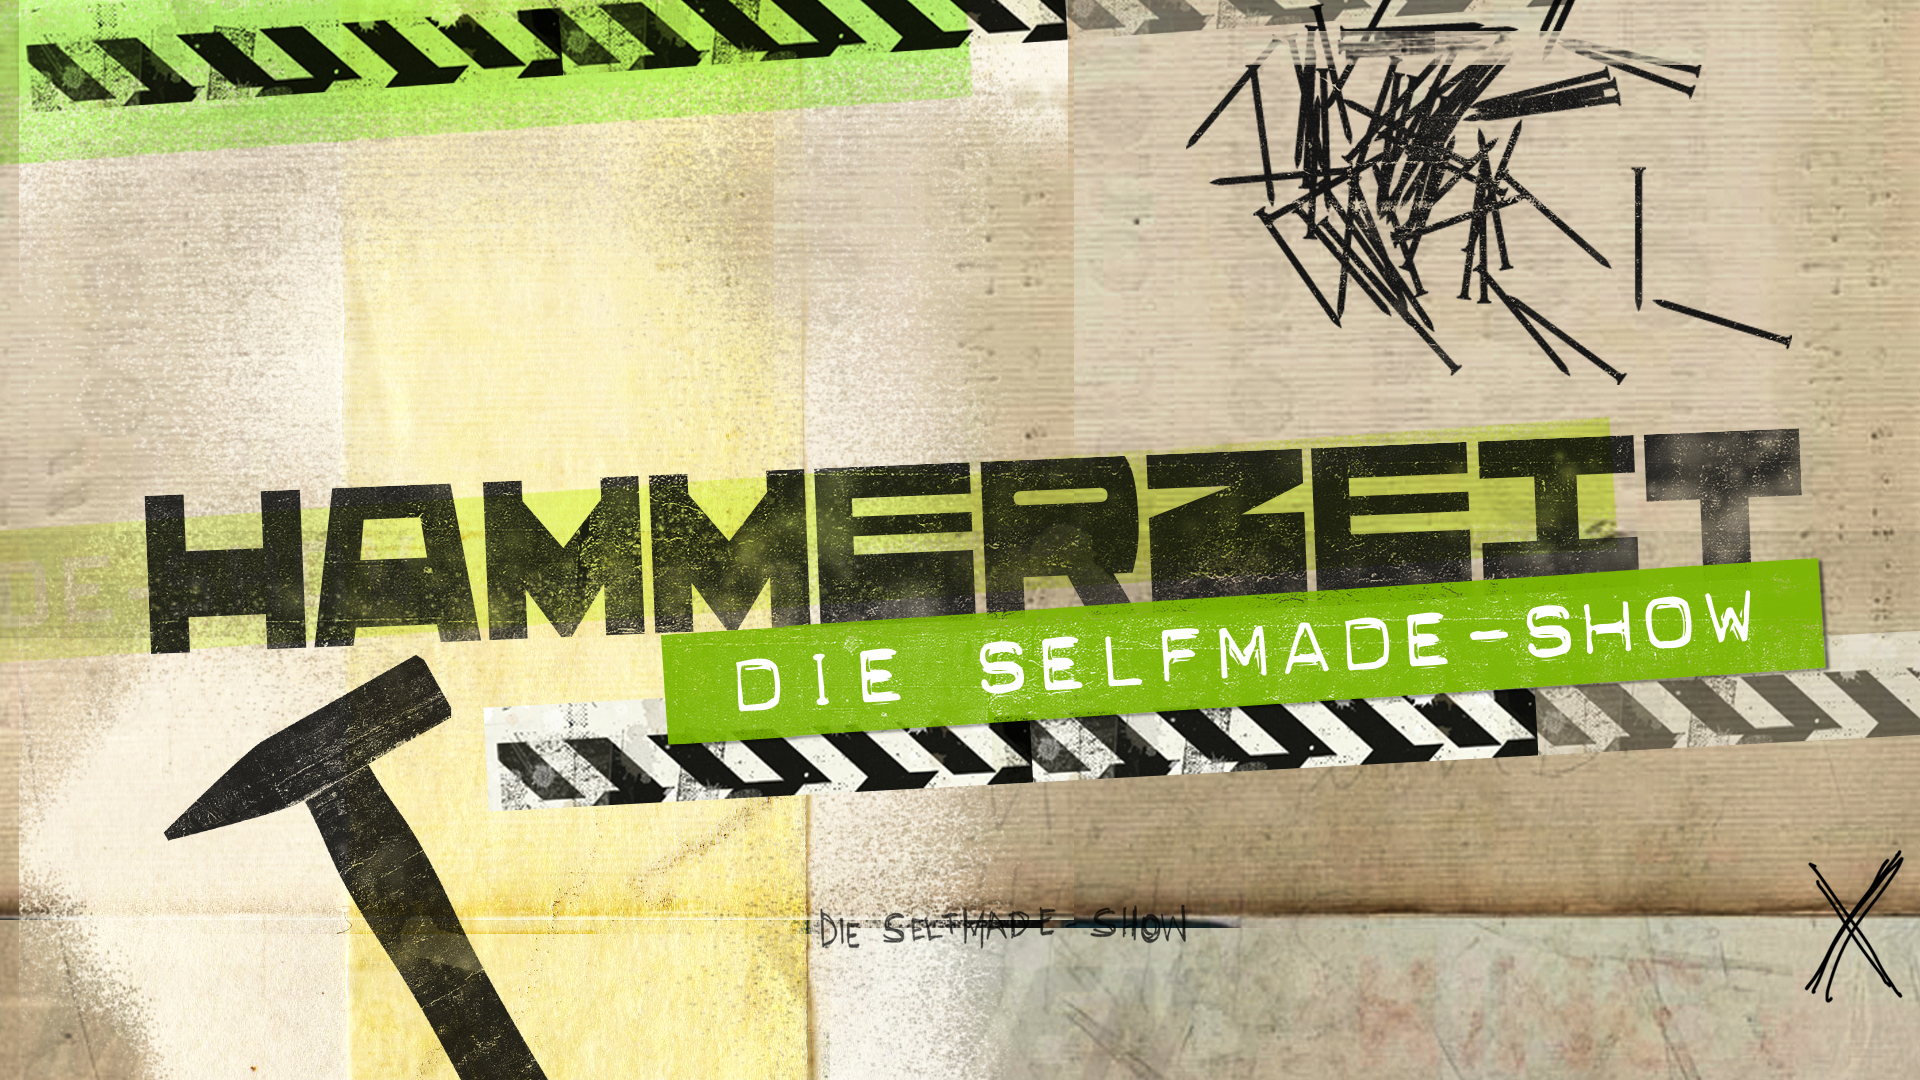 Hammerzeit - Die selfmade Show